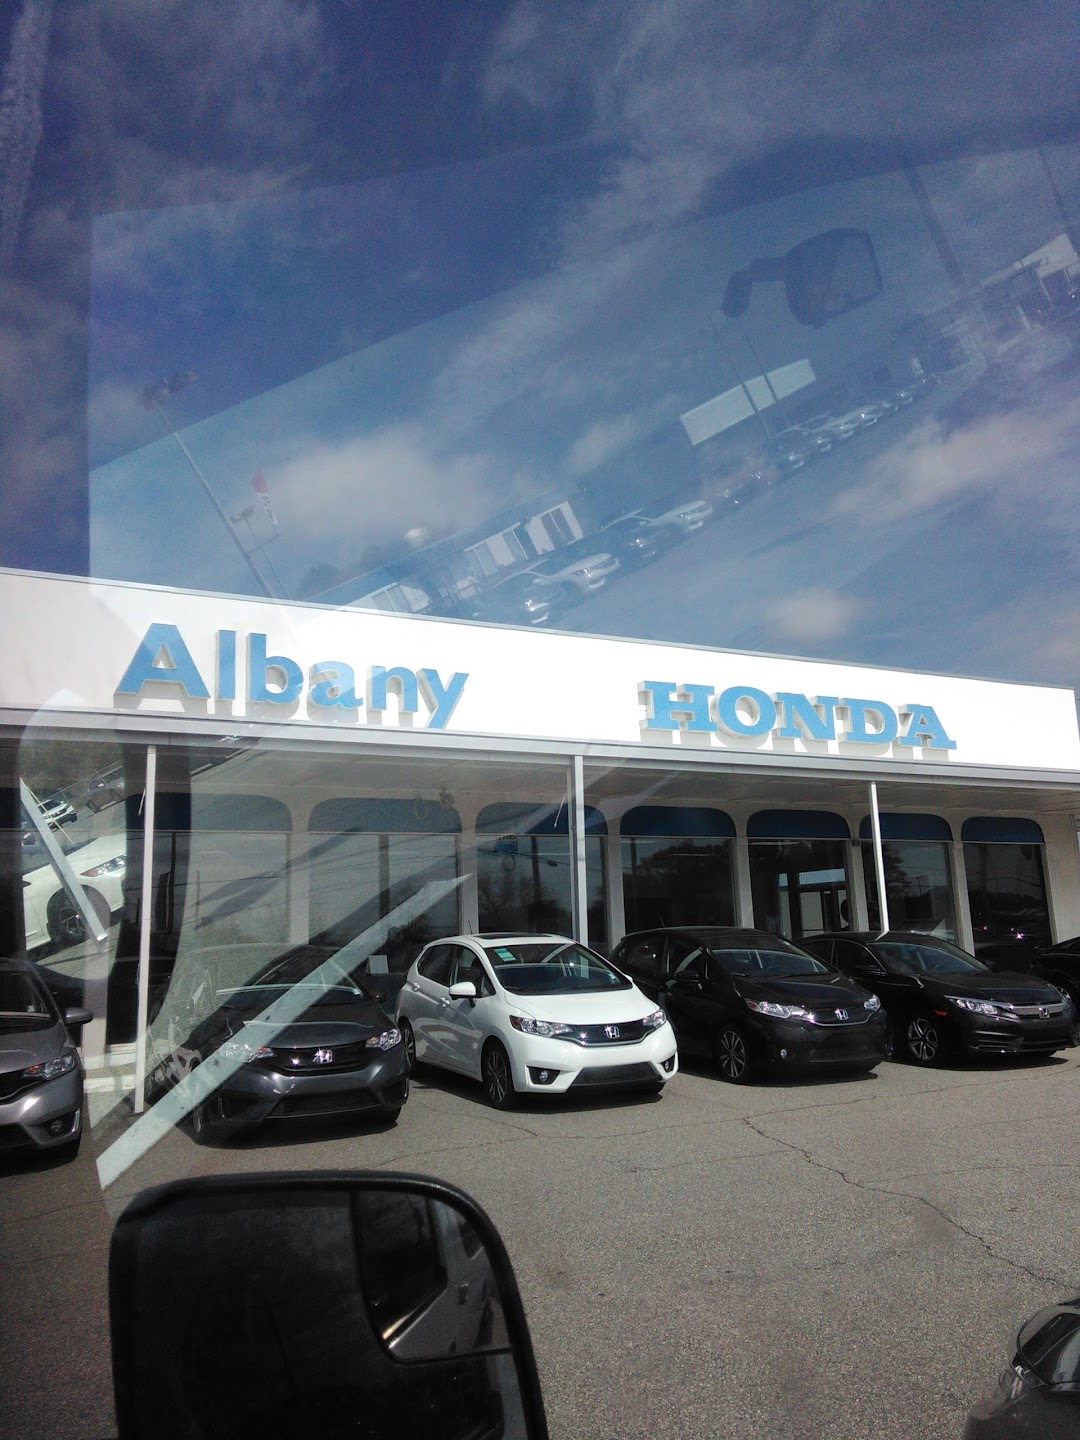 Albany Honda